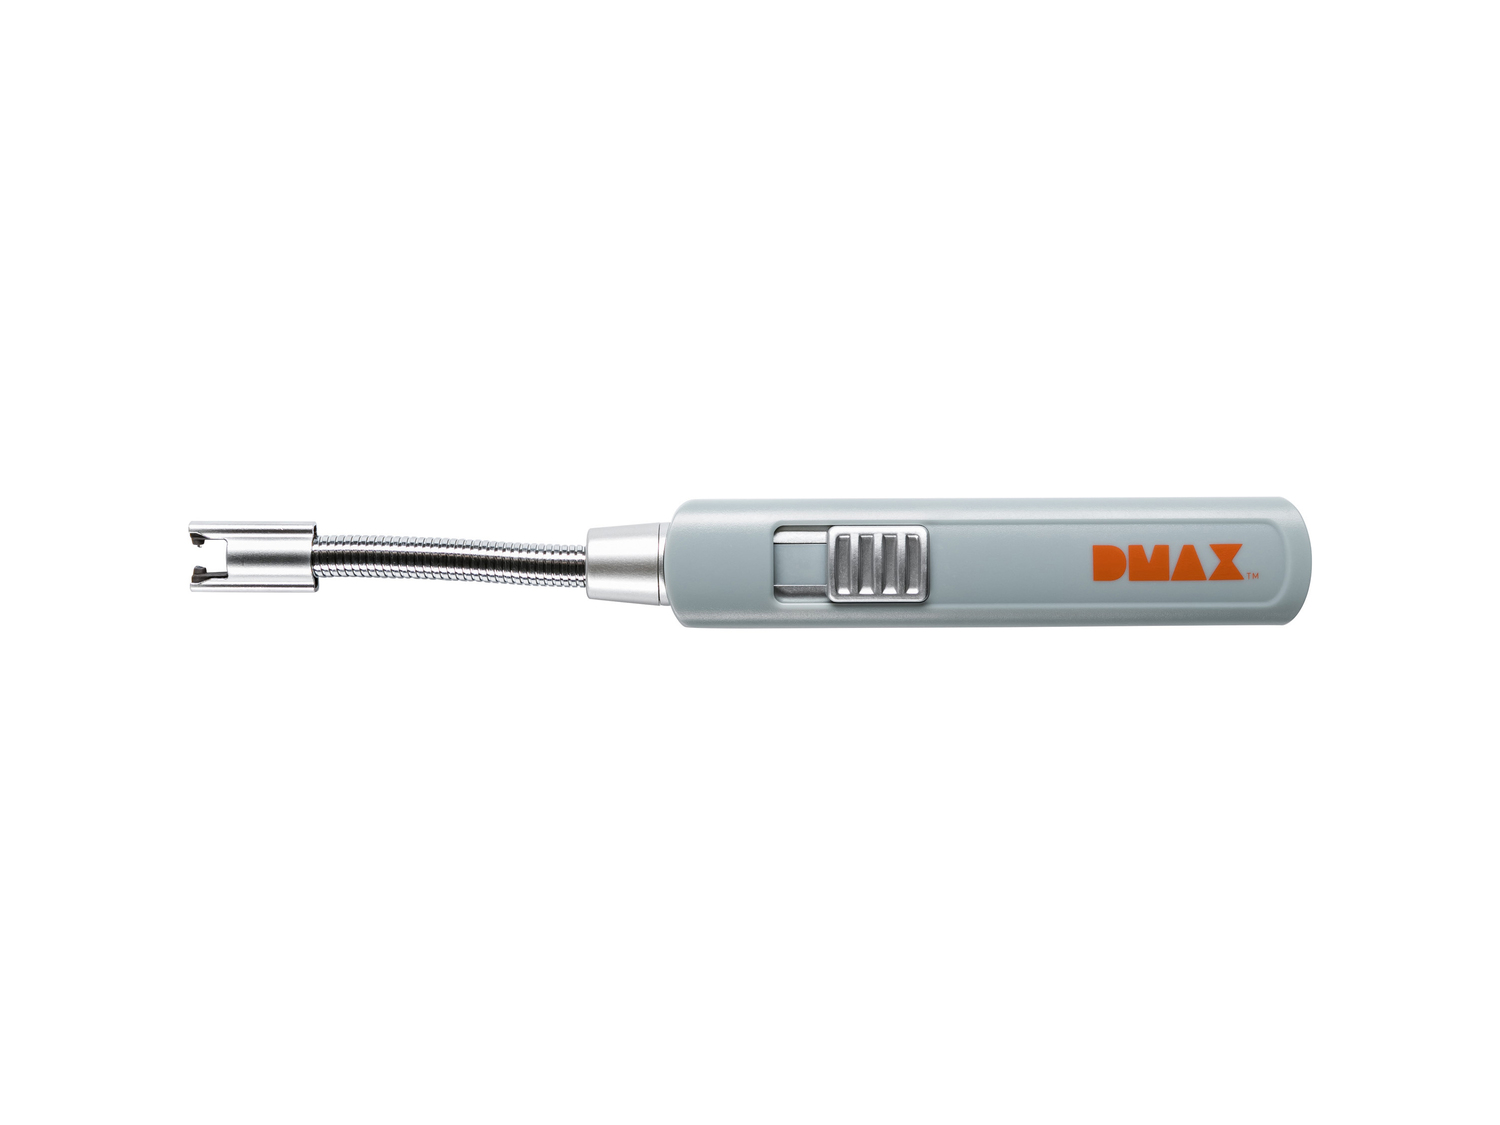 Accendino ad arco elettrico DMAX Dmax, prezzo 7.99 € 
- Ricaricabile - incluso ...